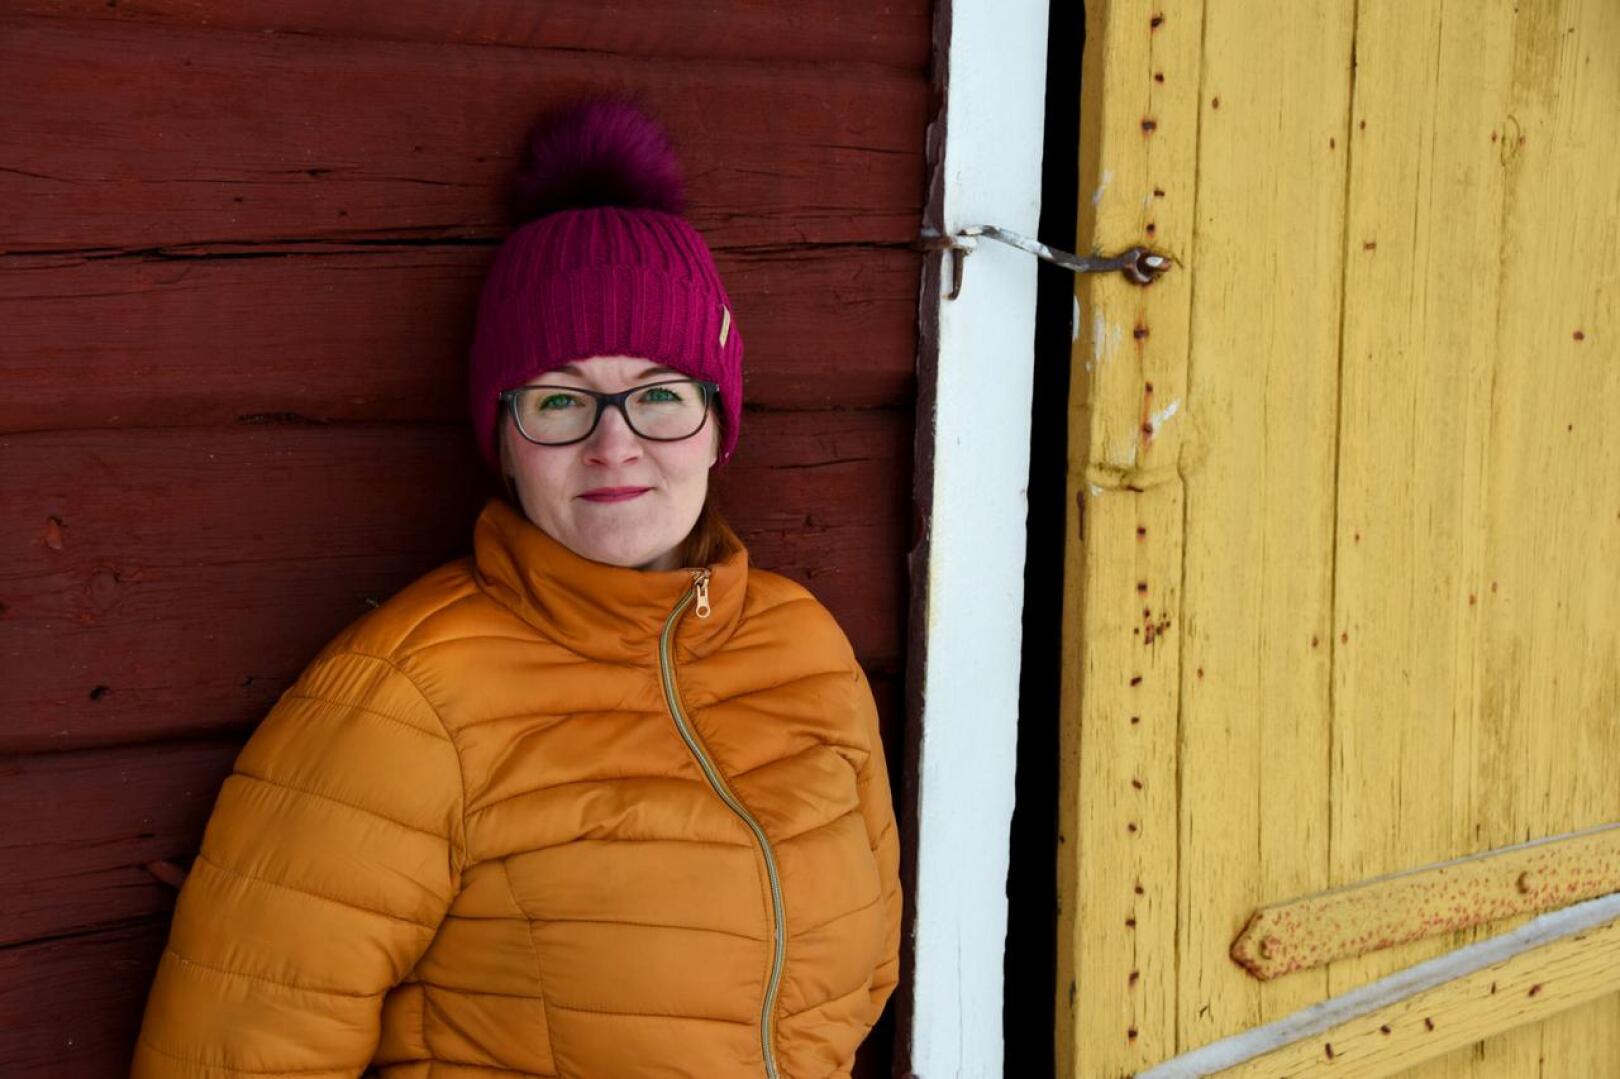 Päivi Ollila on maatalousyrittäjä Ainalin kylältä. Hän nousi vuonna 2017 ensimmäisellä yrittämällä Haapaveden kaupunginvaltuustoon 183 äänellä, mikä oli paikkakunnan suurin henkilökohtainen äänimäärä.